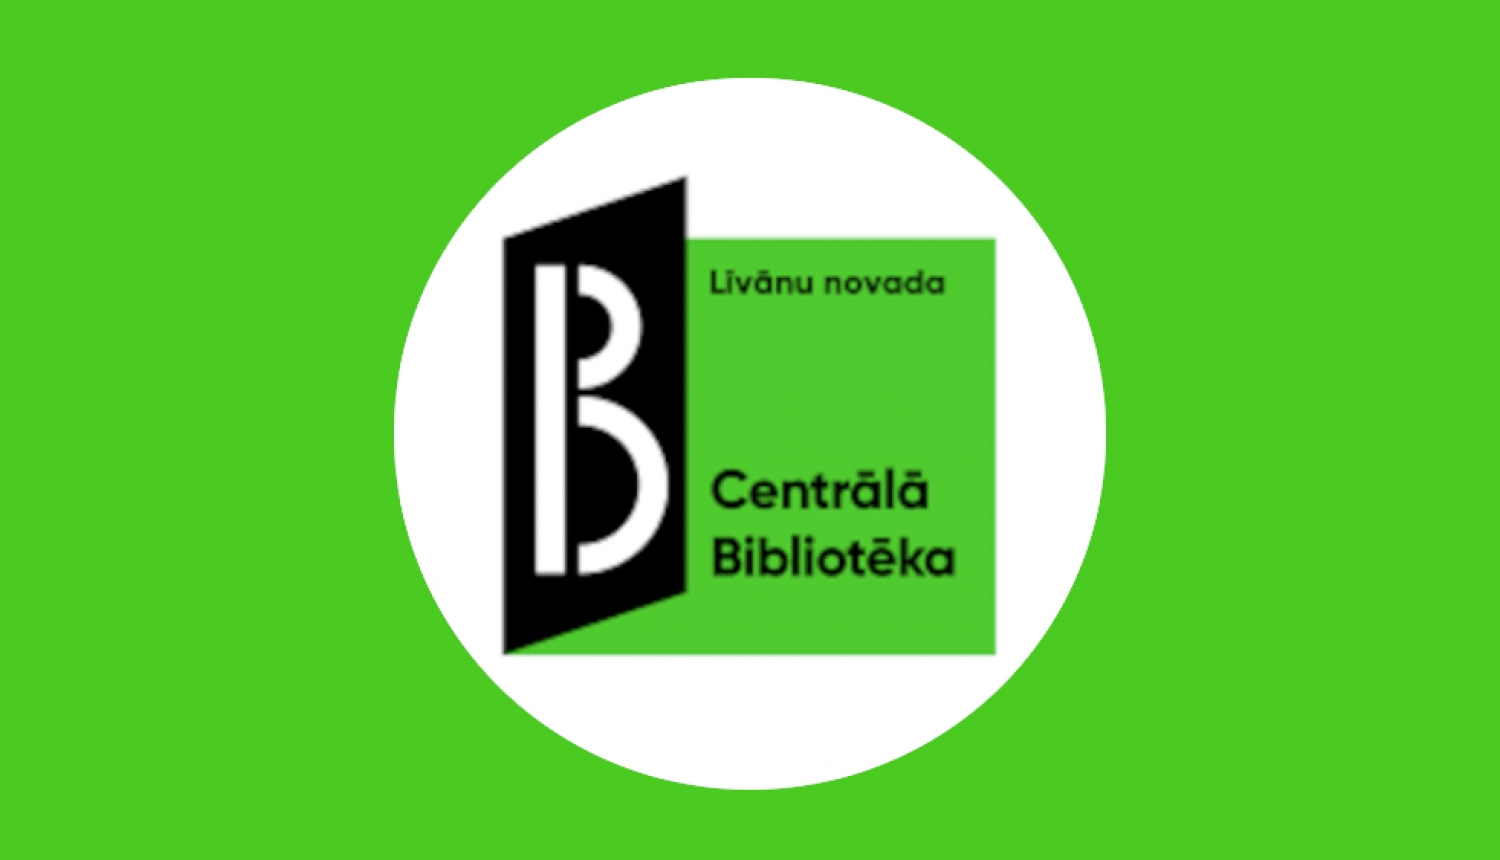 Līvānu novada Centrālās bibliotēkas logo